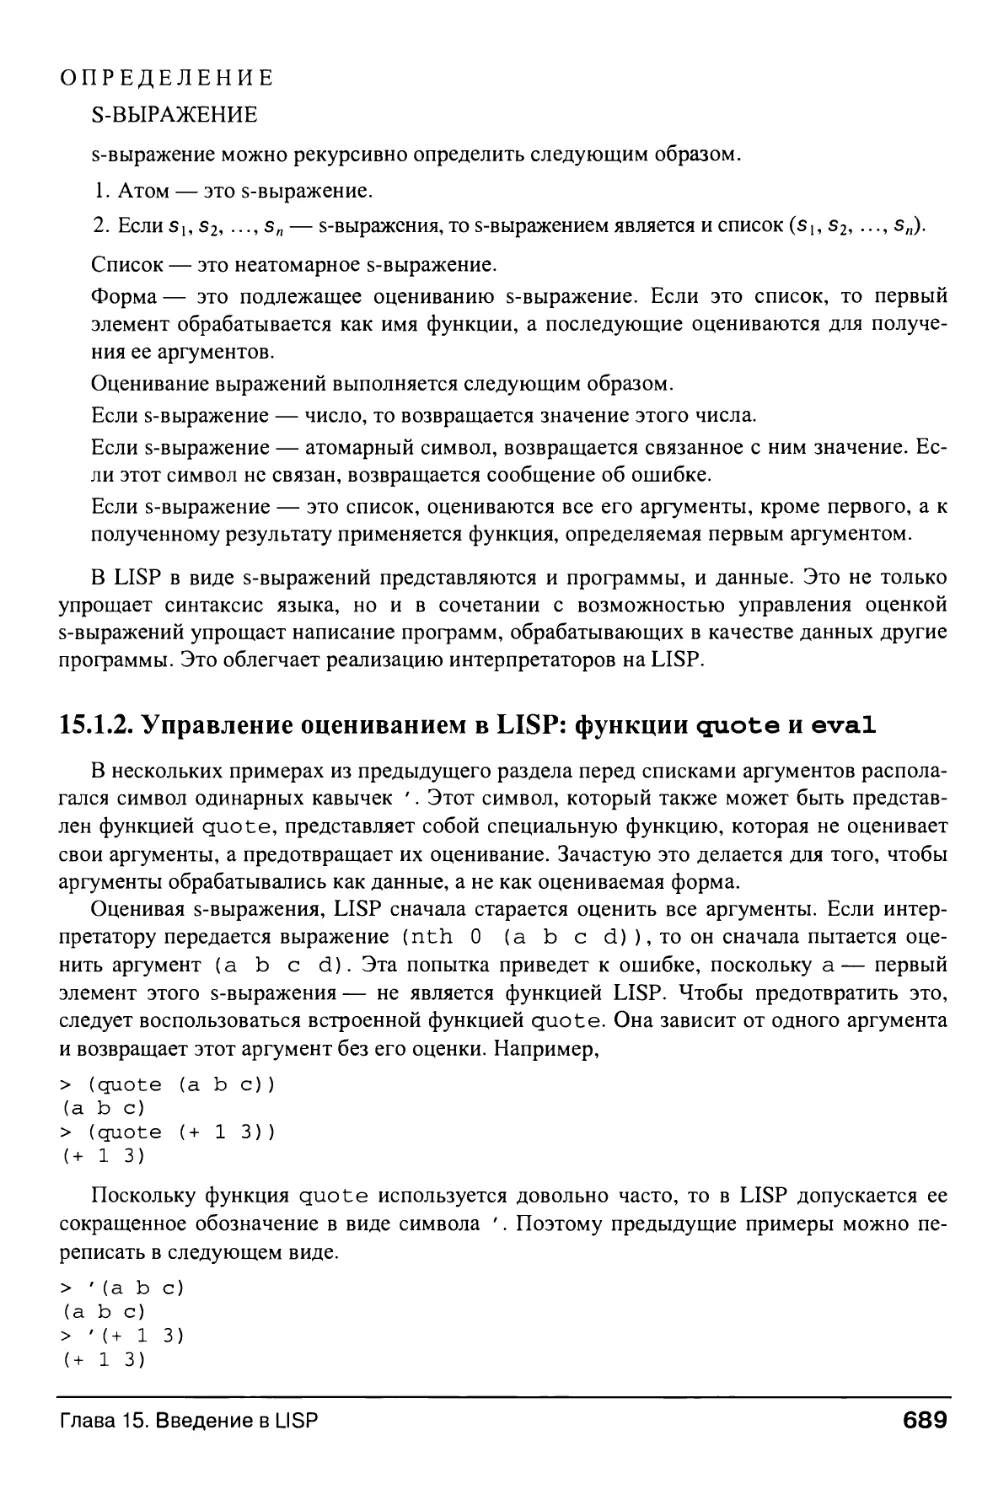 15.1.2. Управление оцениванием в LISP: функции quote и eval